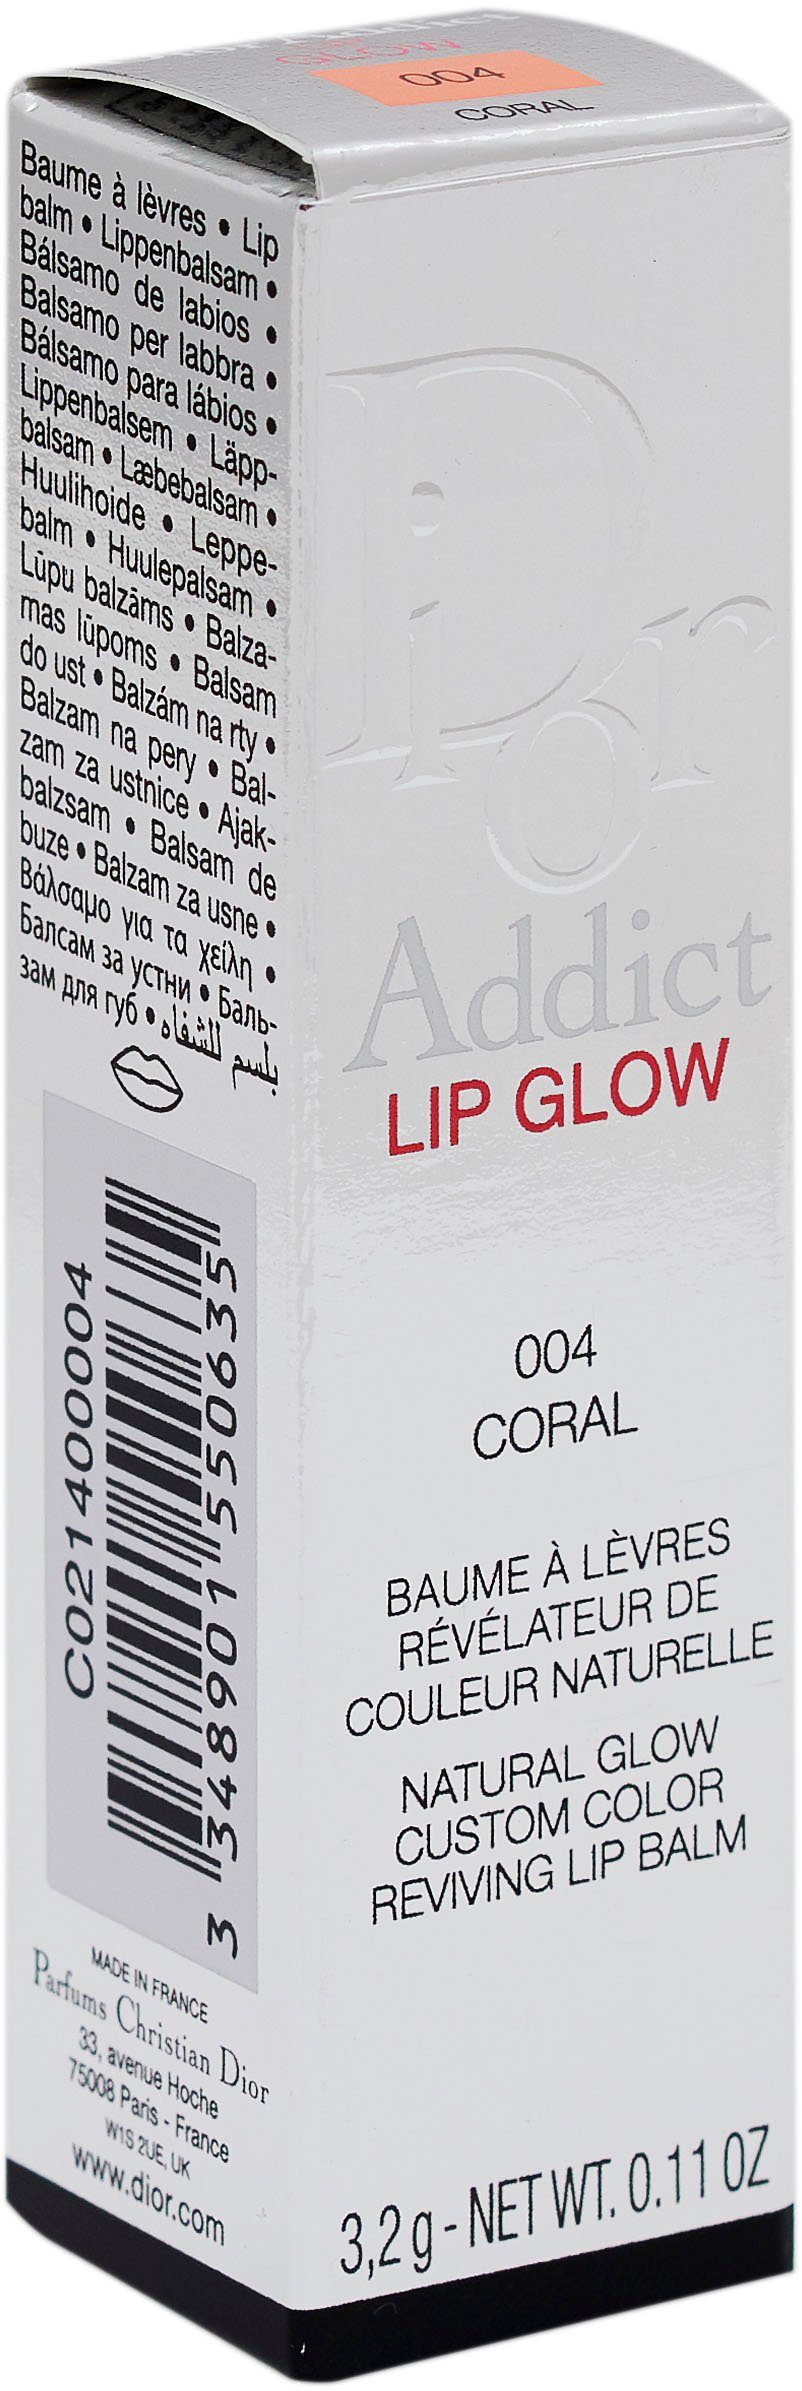 Coral 004 Lippenbalsam Dior Glow Dior Addict Lip